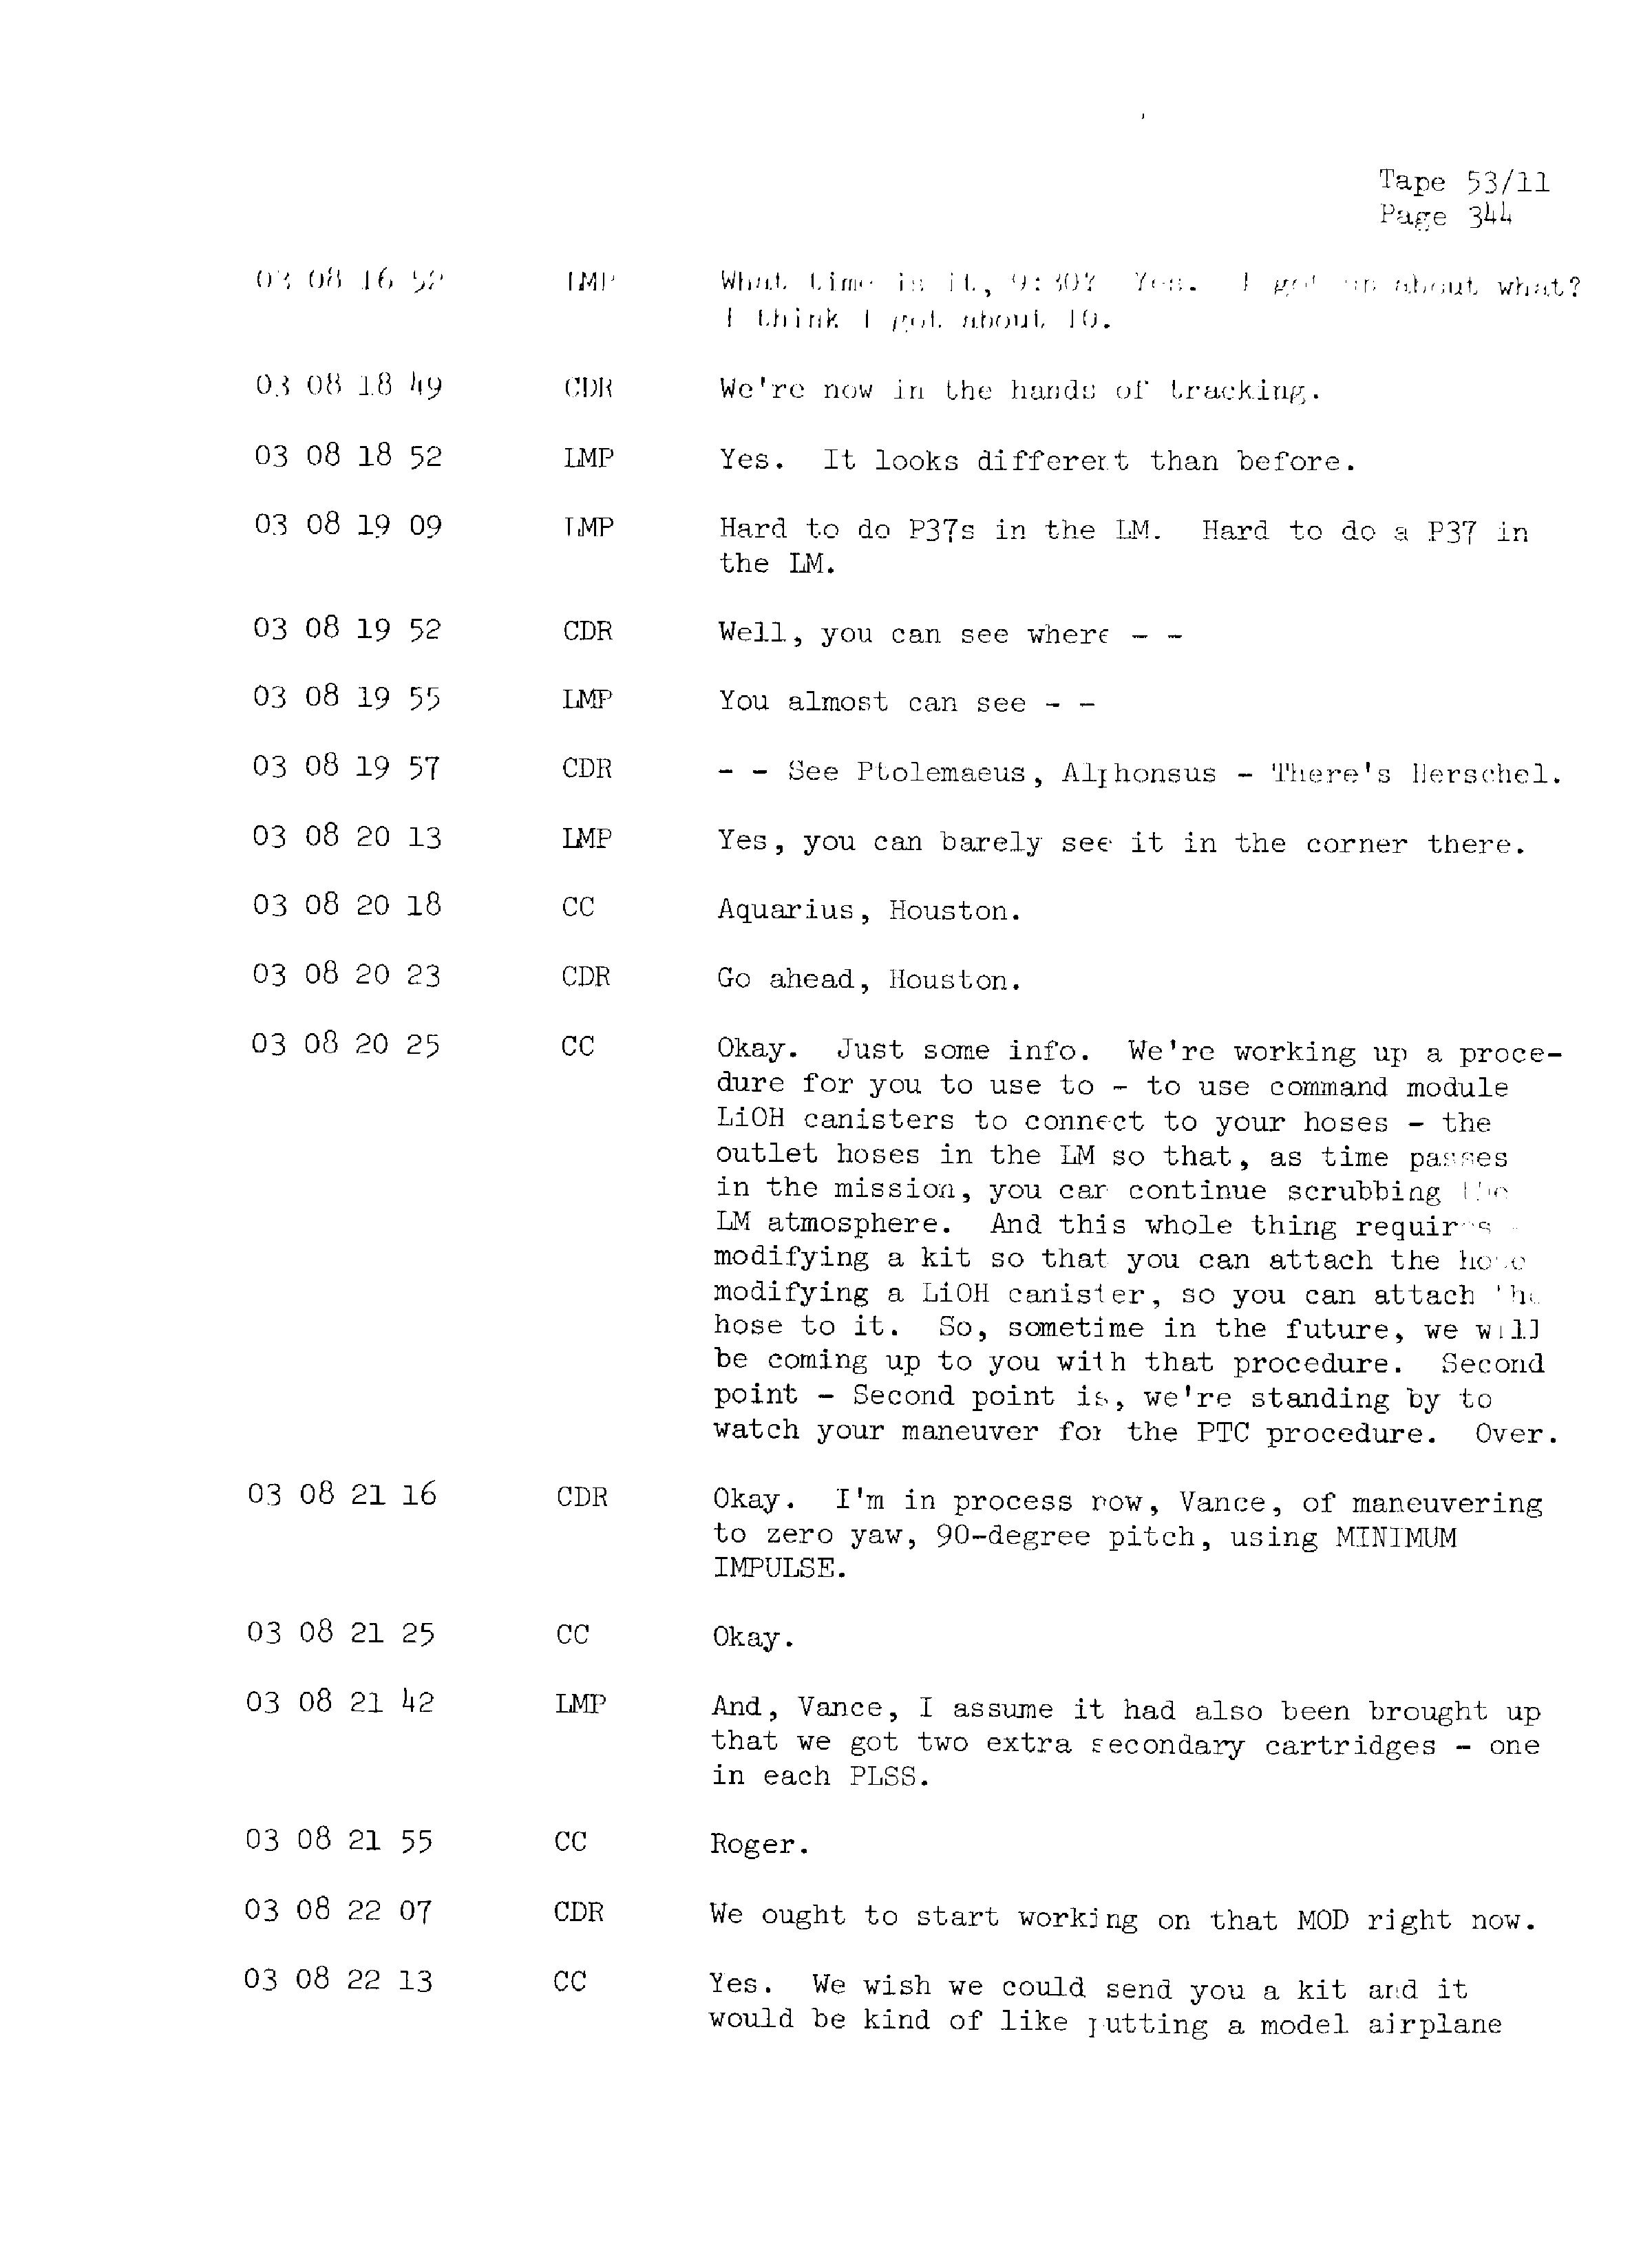 Page 351 of Apollo 13’s original transcript